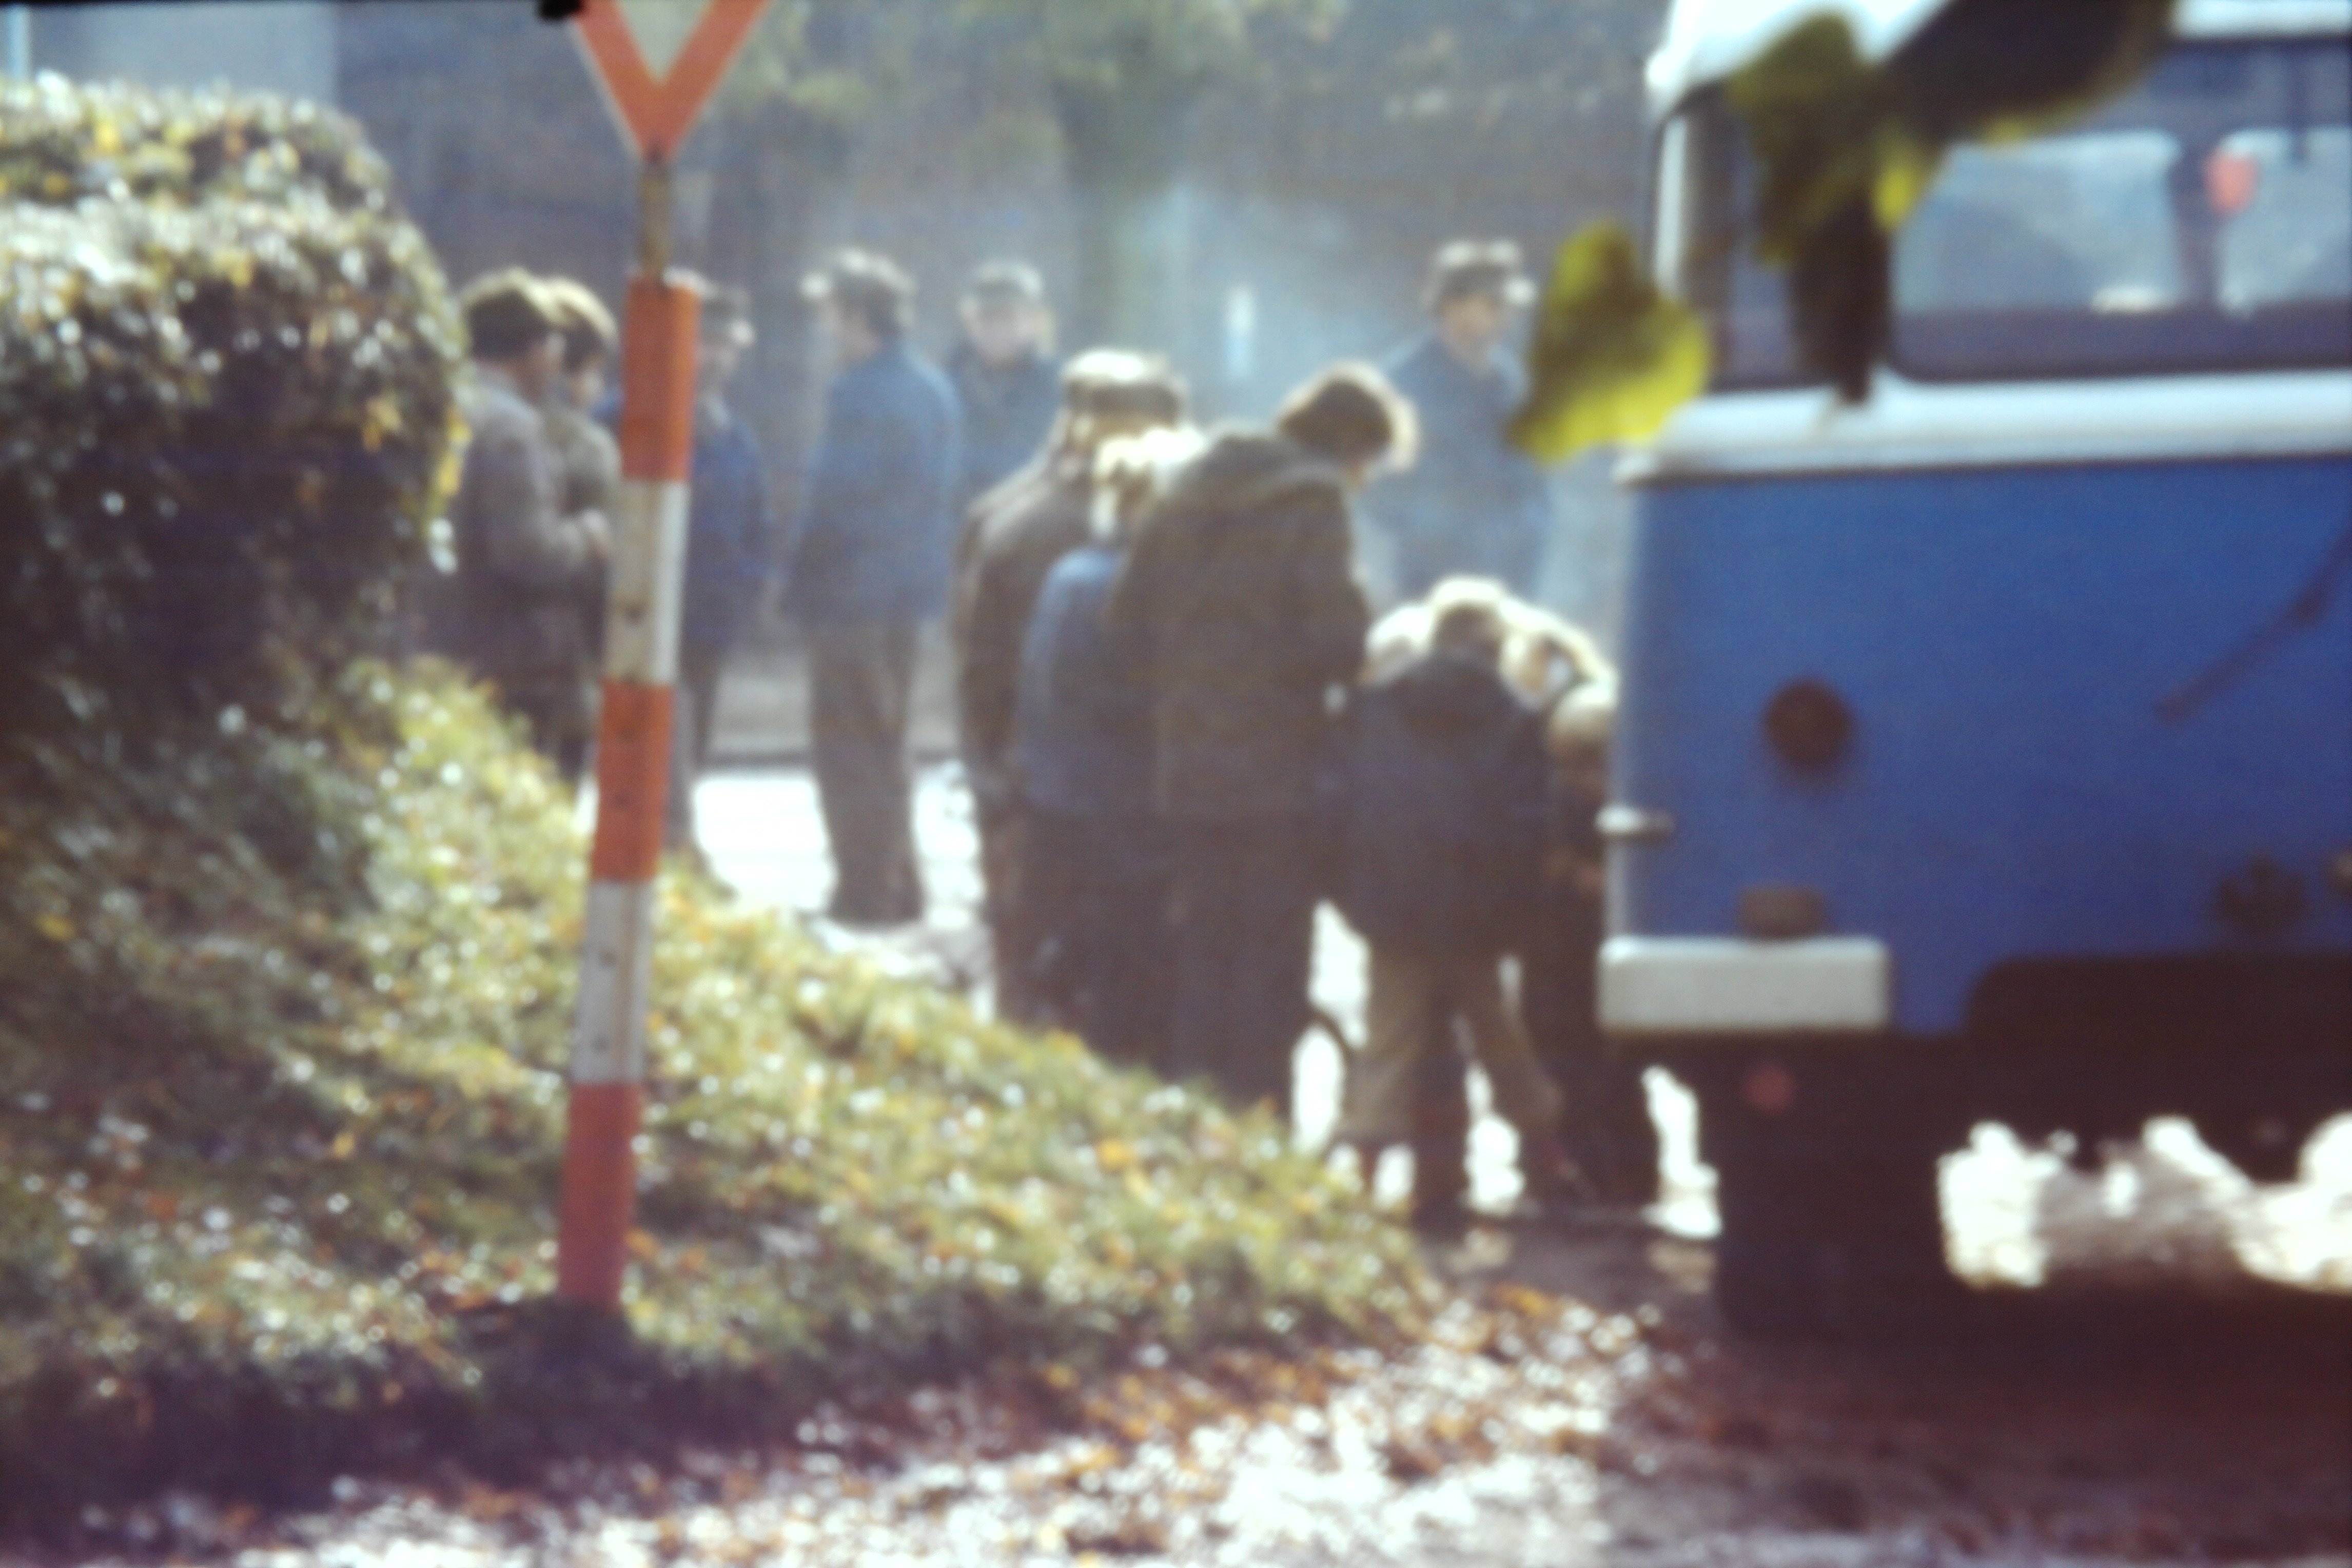 Atomschlagübung "Dosse 83": Angehörige des Zivilschutzes (DDR Geschichtsmuseum und Dokumentationszentrum Perleberg CC BY-SA)